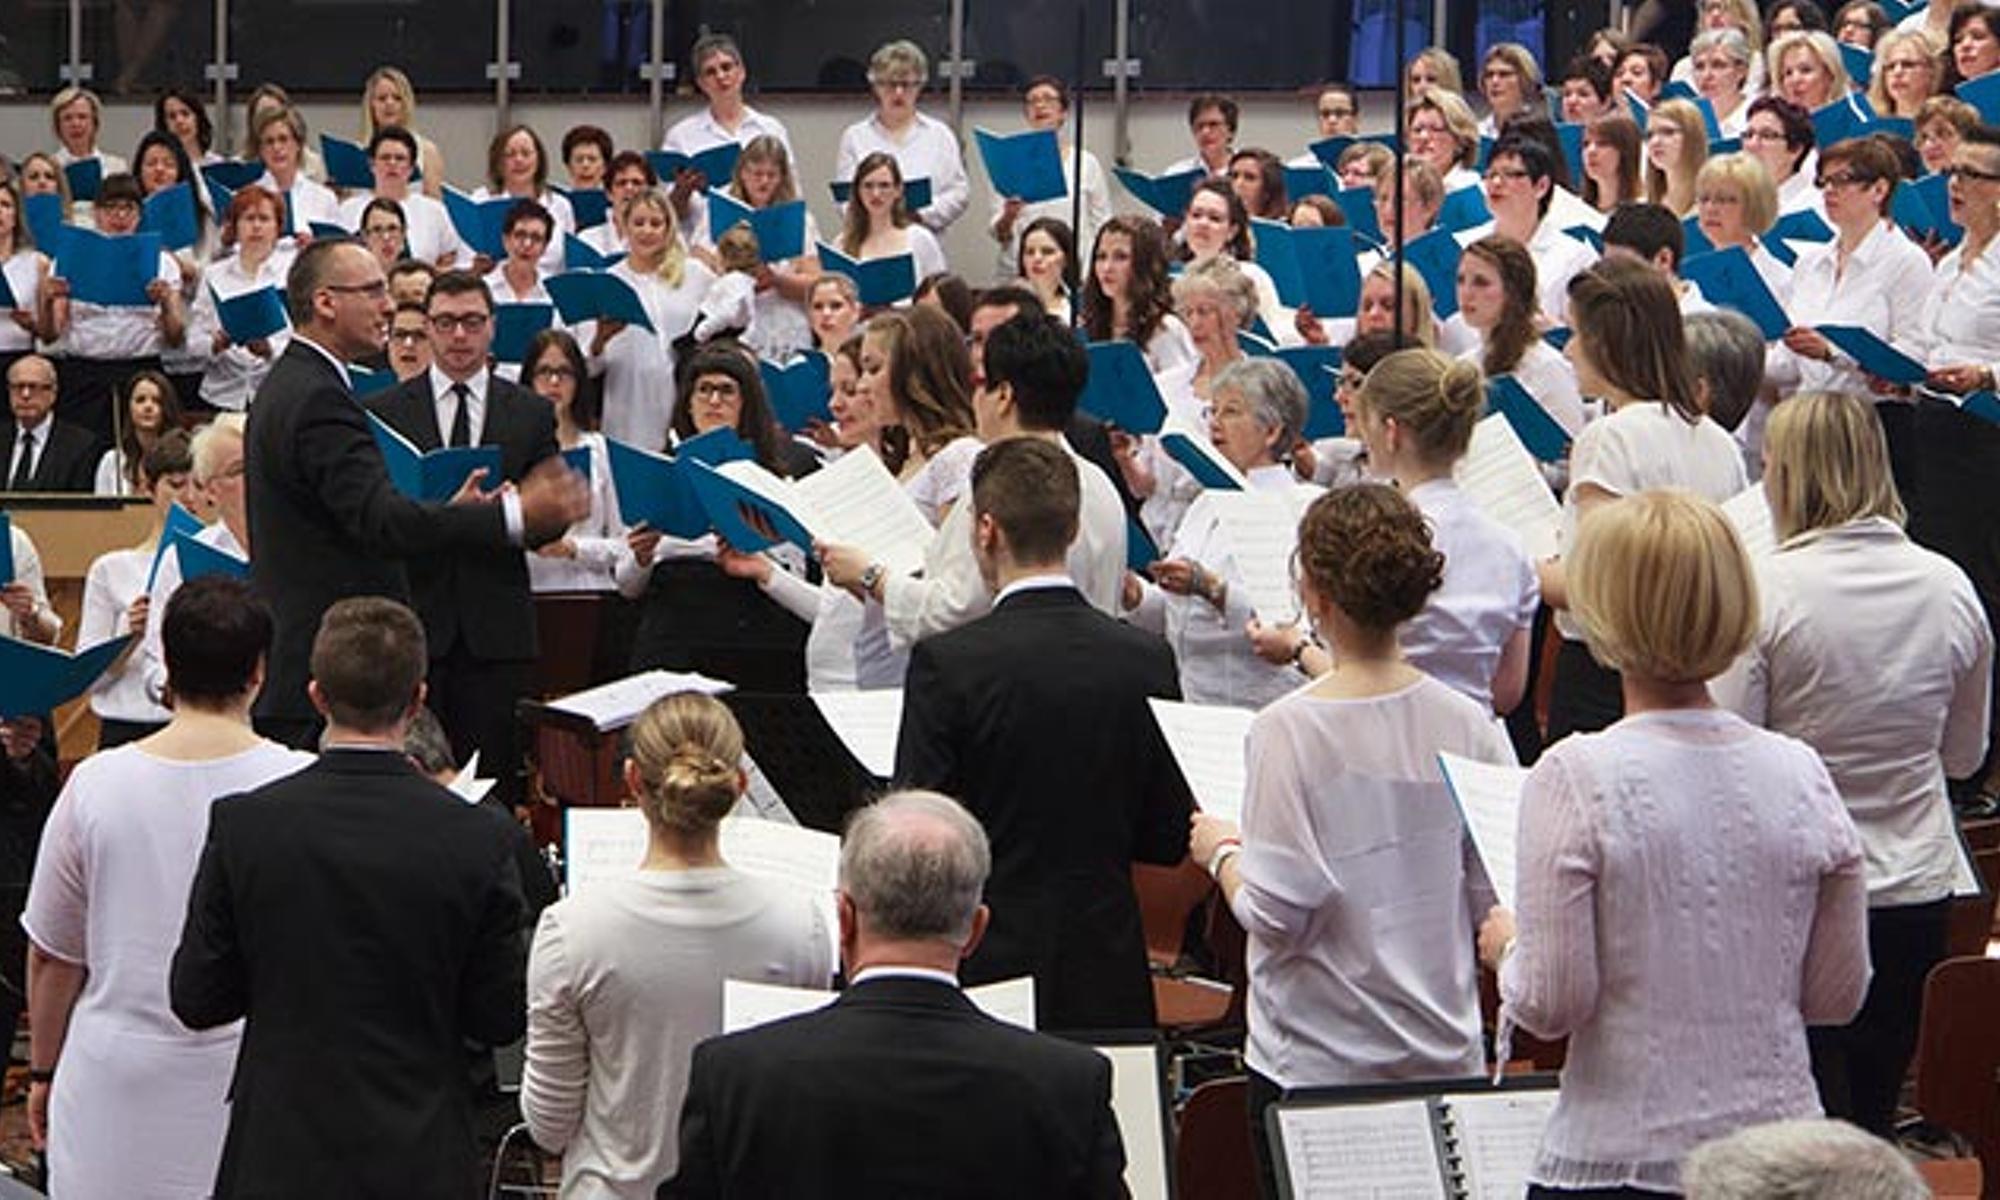 Chor und Orchester umrahmten den Gottesdienst musikalisch